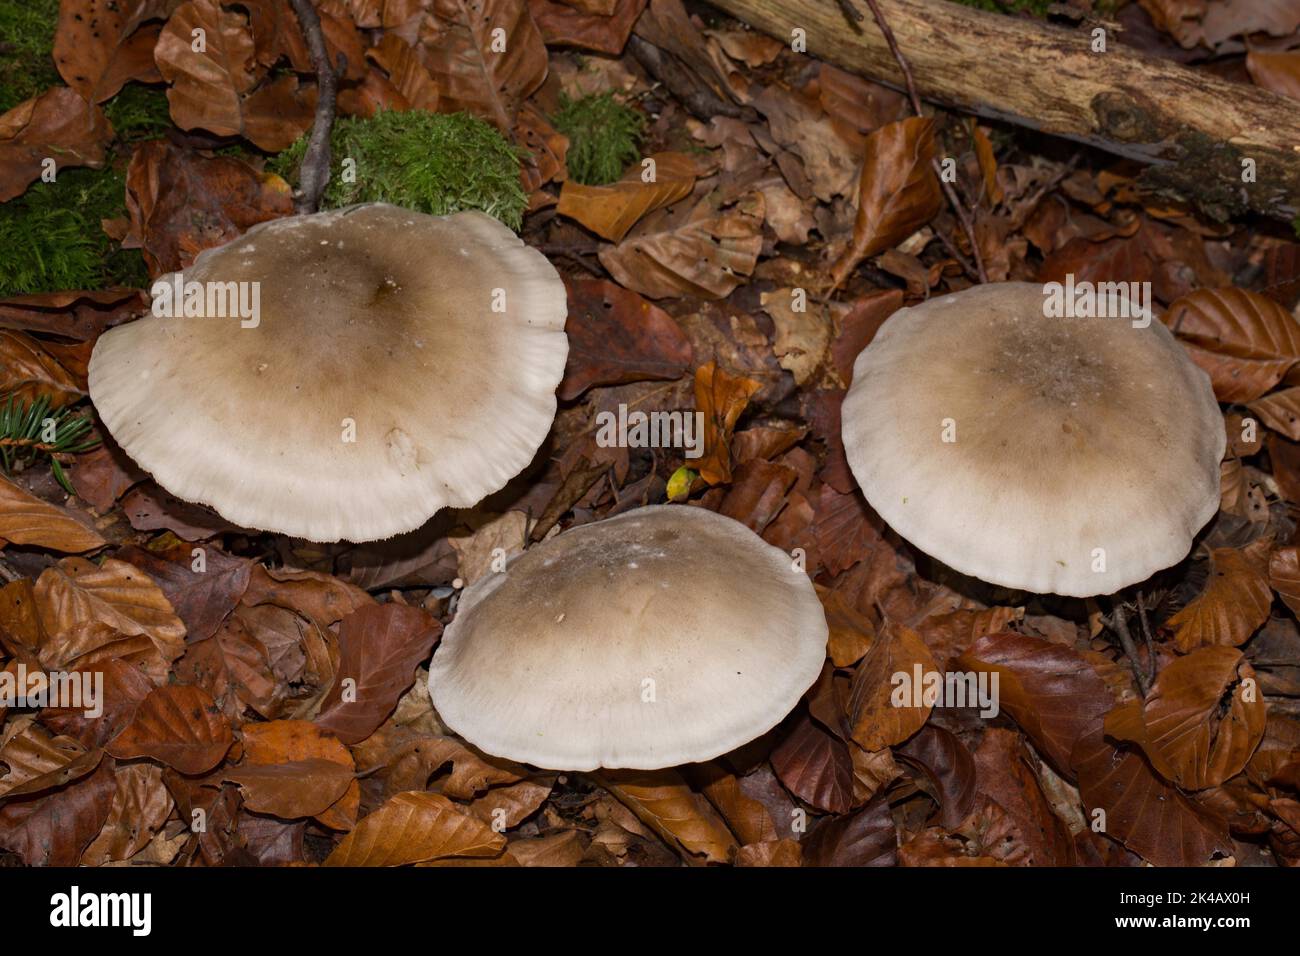 Nebelgrauer Trichterling corpo fruttato tre cappelli grigio-marrone uno accanto all'altro in foglie autunnali marroni Foto Stock